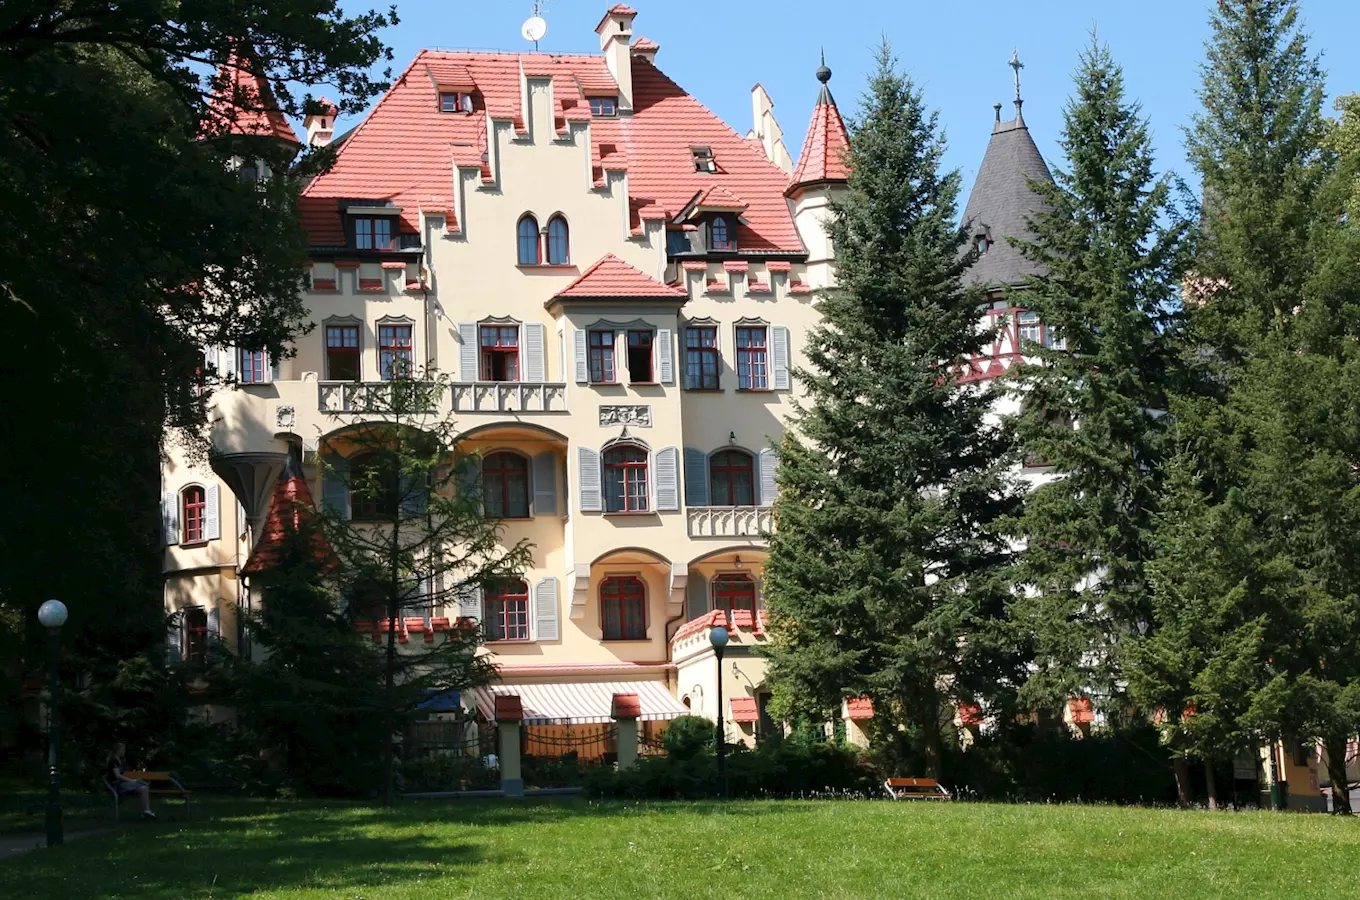 Hotel Villa Ritter Karlovy Vary